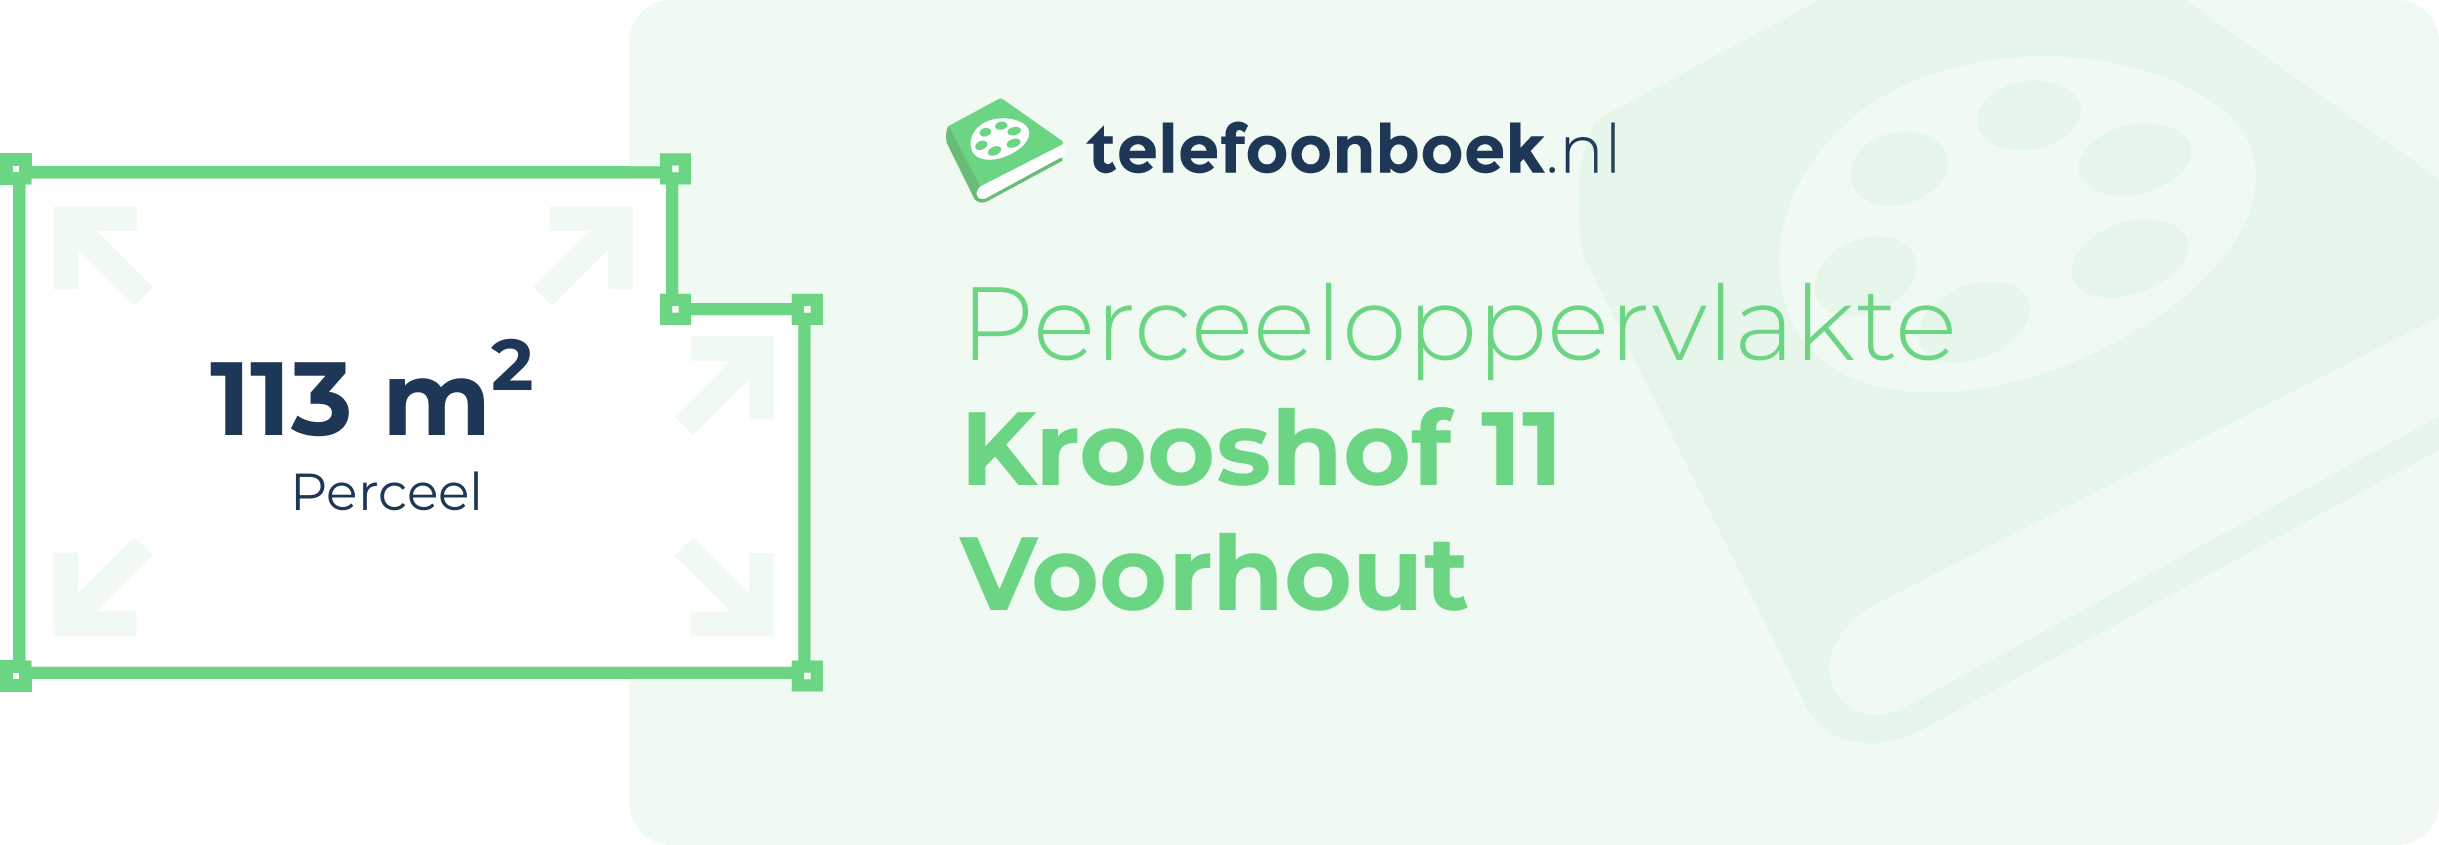 Perceeloppervlakte Krooshof 11 Voorhout